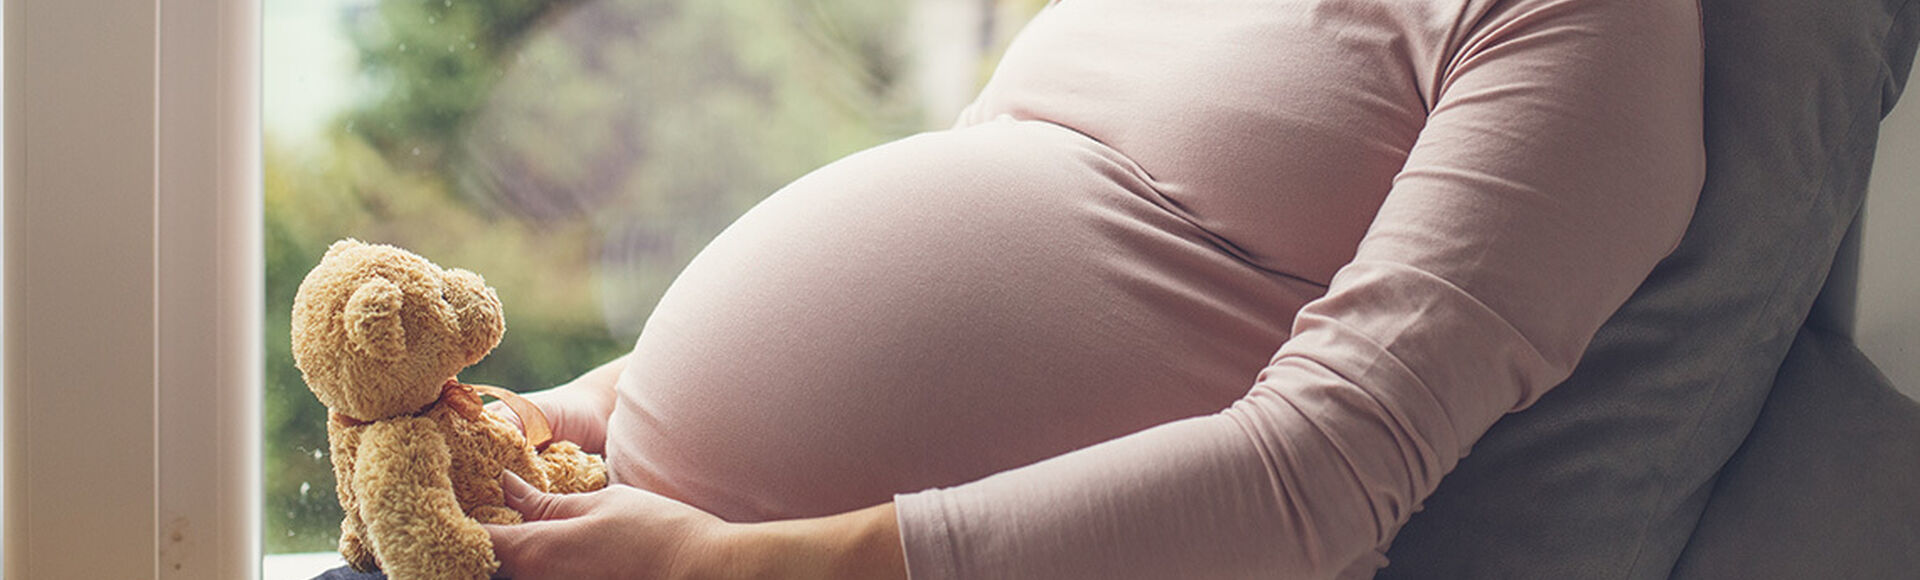 Obstetra tu acompañante durante el parto | by Huggies Argentina